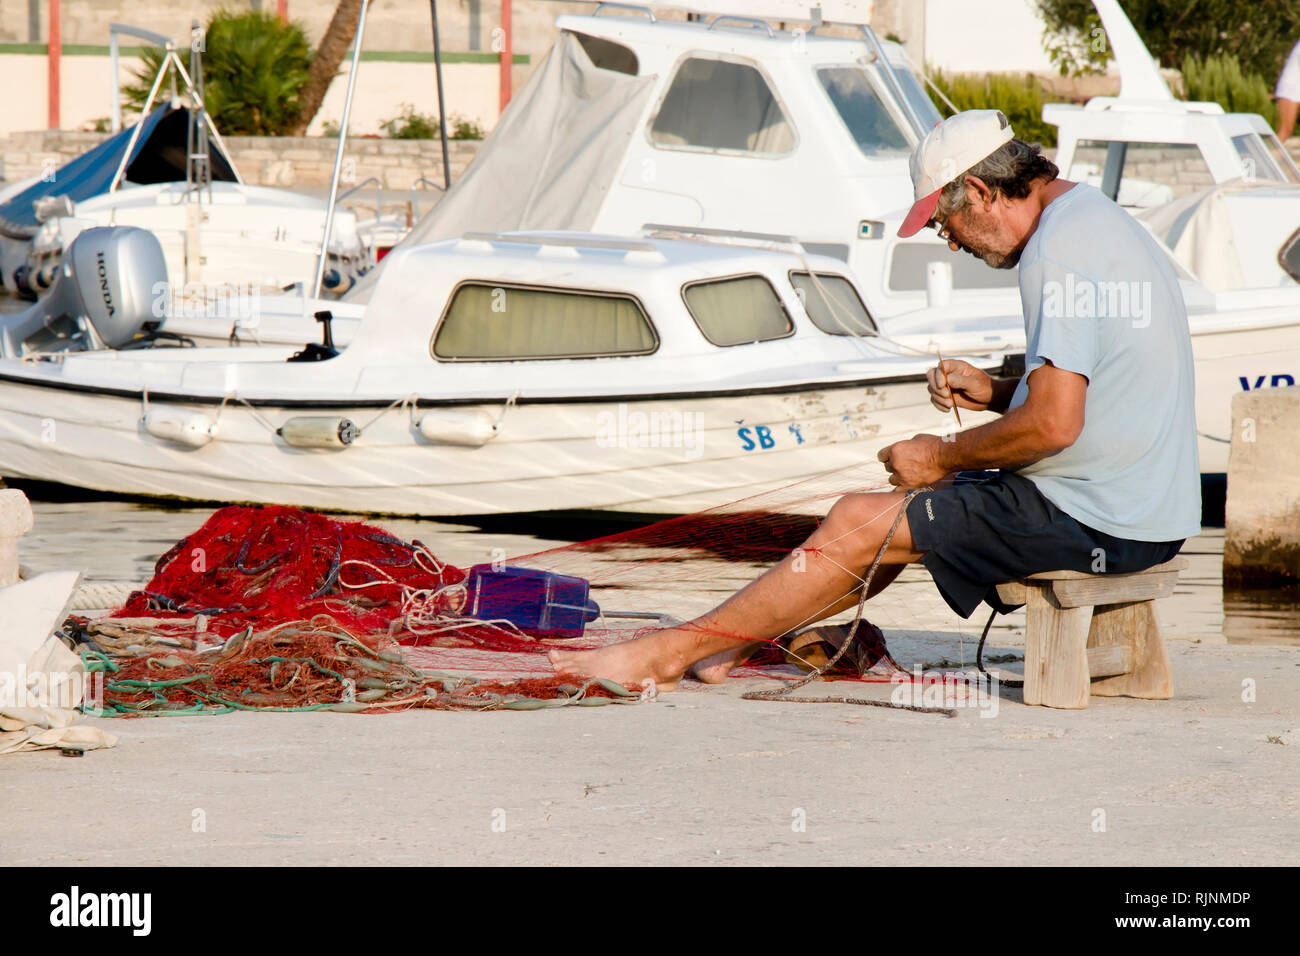 Isola di Prvic, Croazia - Agosto 23, 2018: pescatore riparando la sua rete da pesca sul molo con barche in background Foto Stock